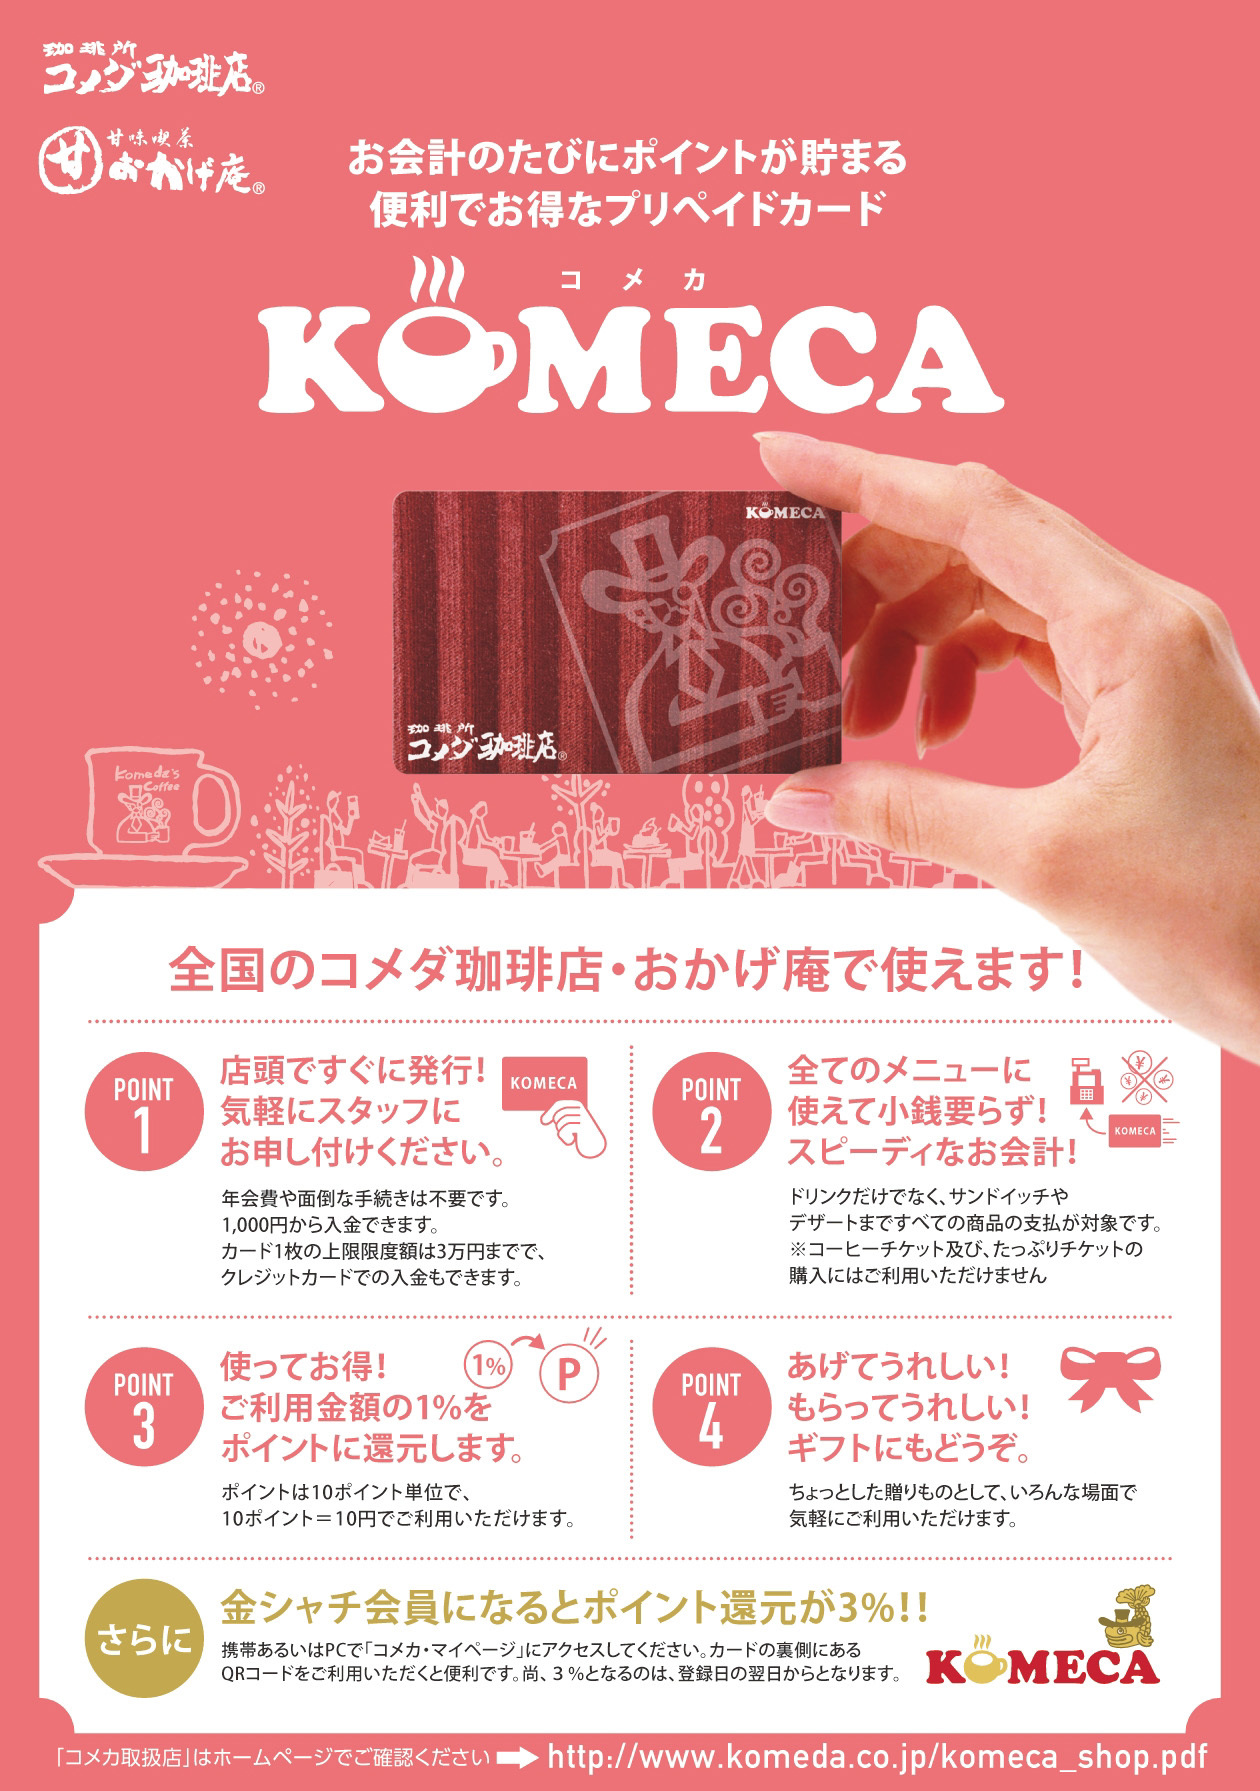 コメダ珈琲店 便利でお得なプリペイドカード Komeca コメカ 600店舗導入完了のお知らせ 株式会社コメダのプレスリリース